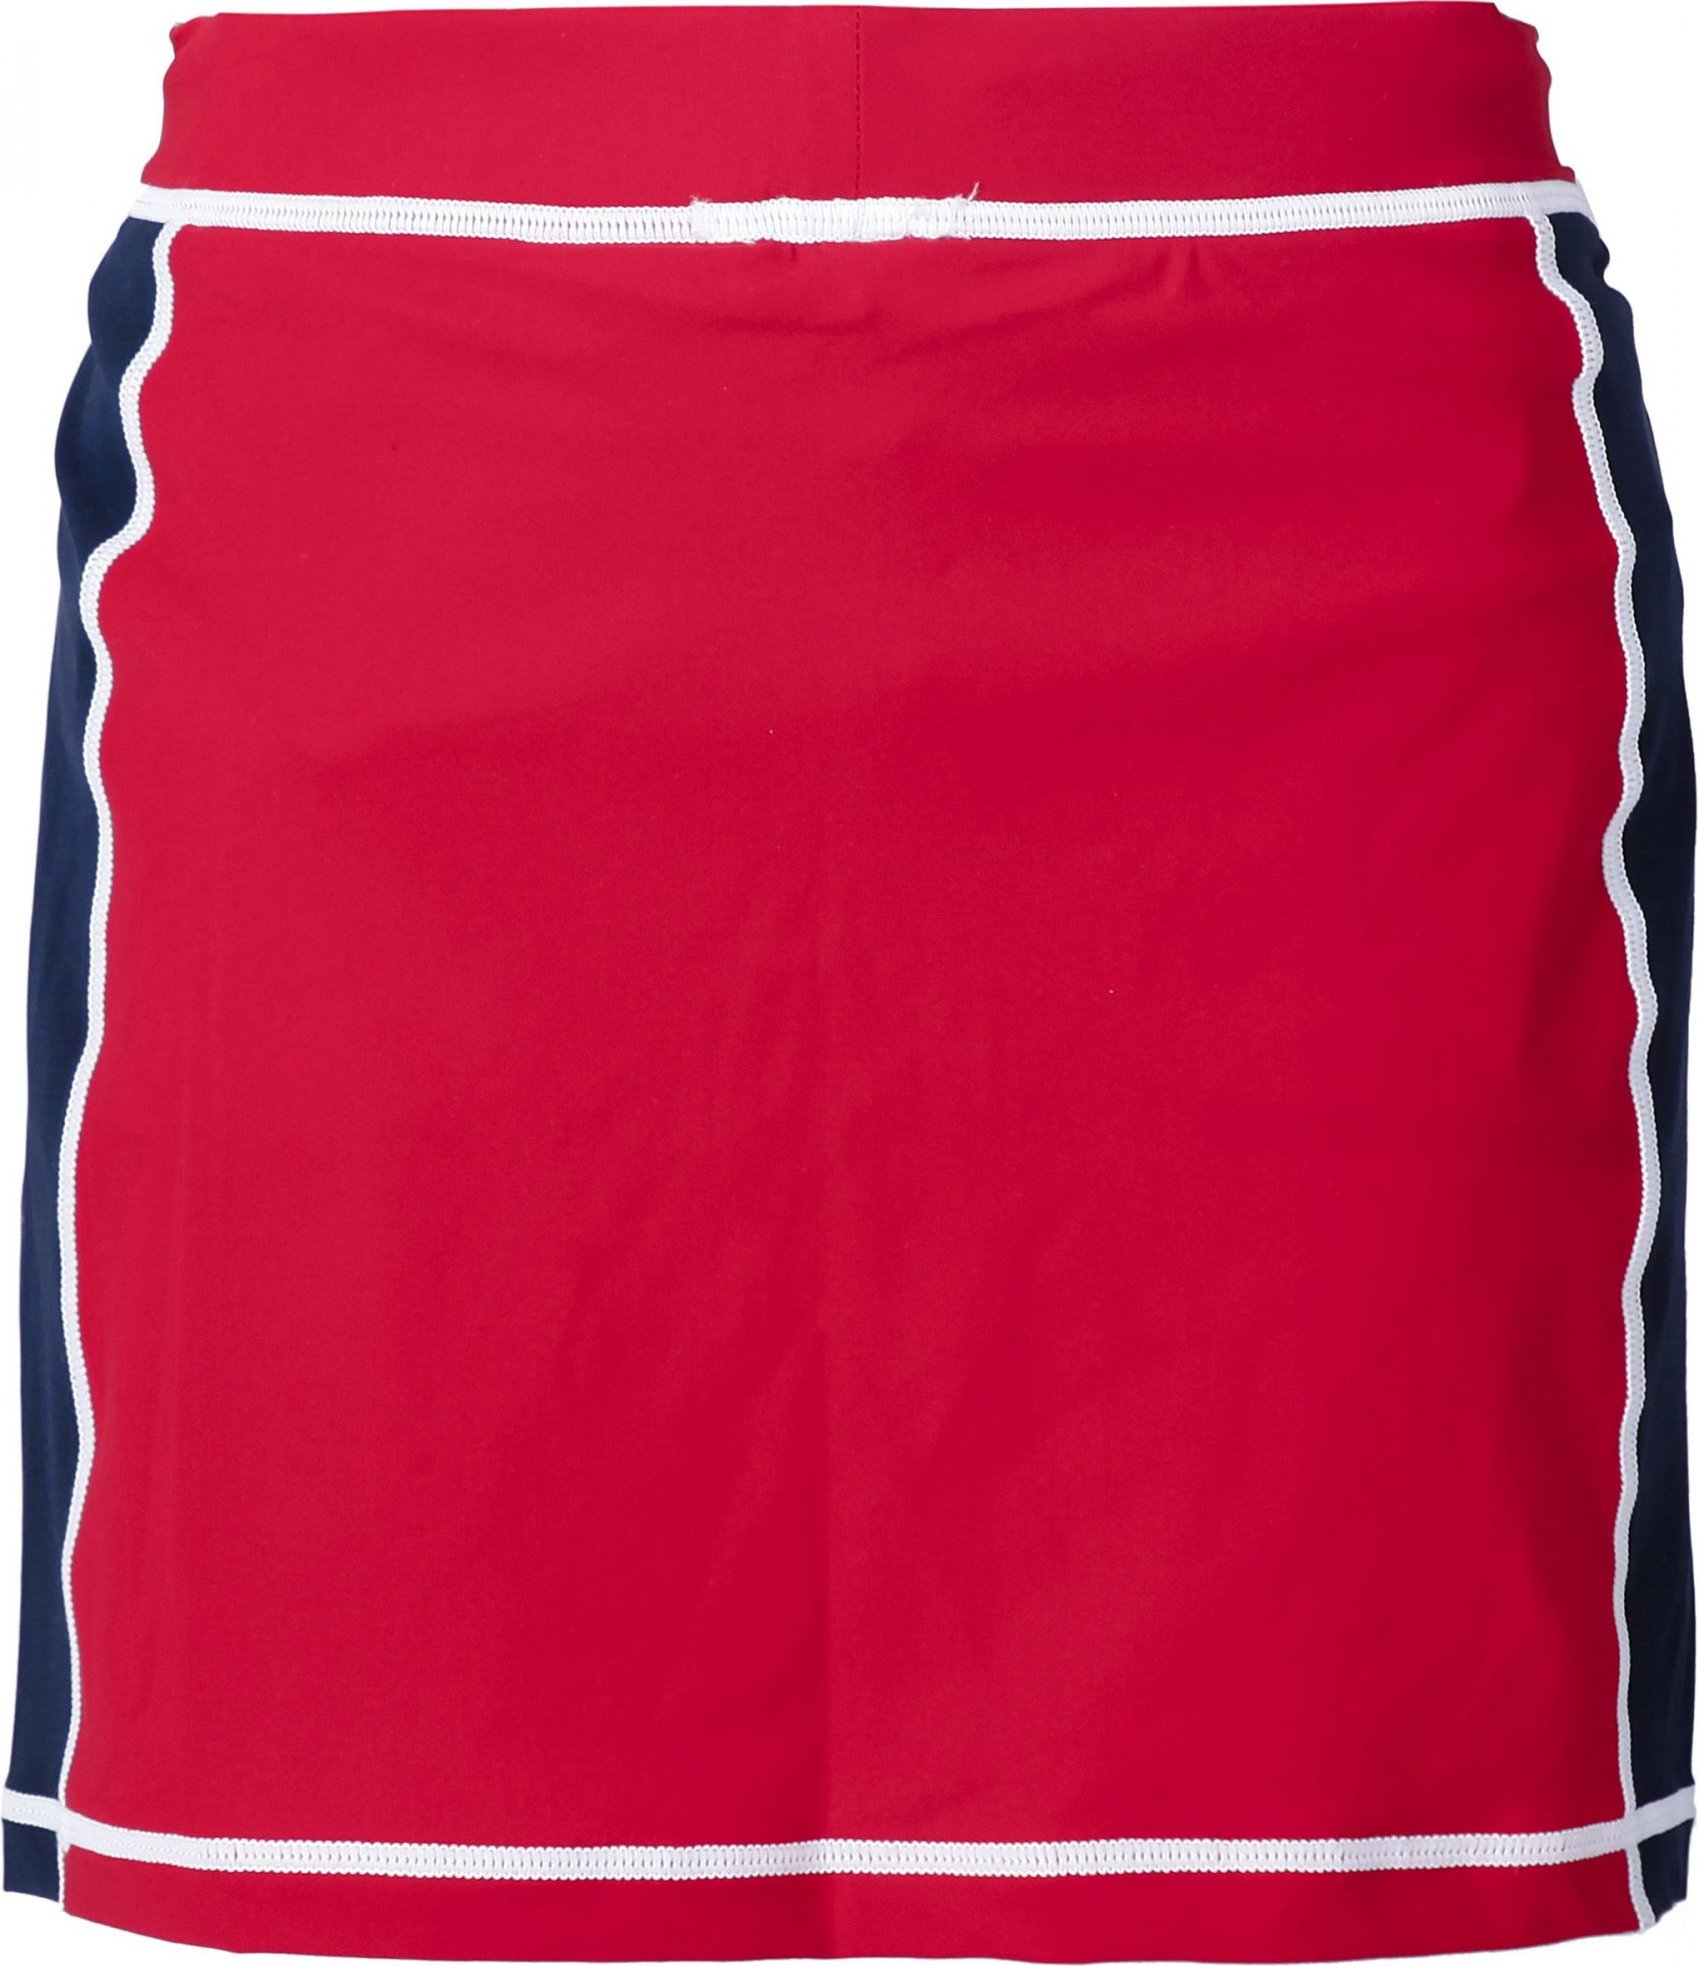 Dívčí plavecká sukně DIDRIKSONS Coral červená Velikost: 80